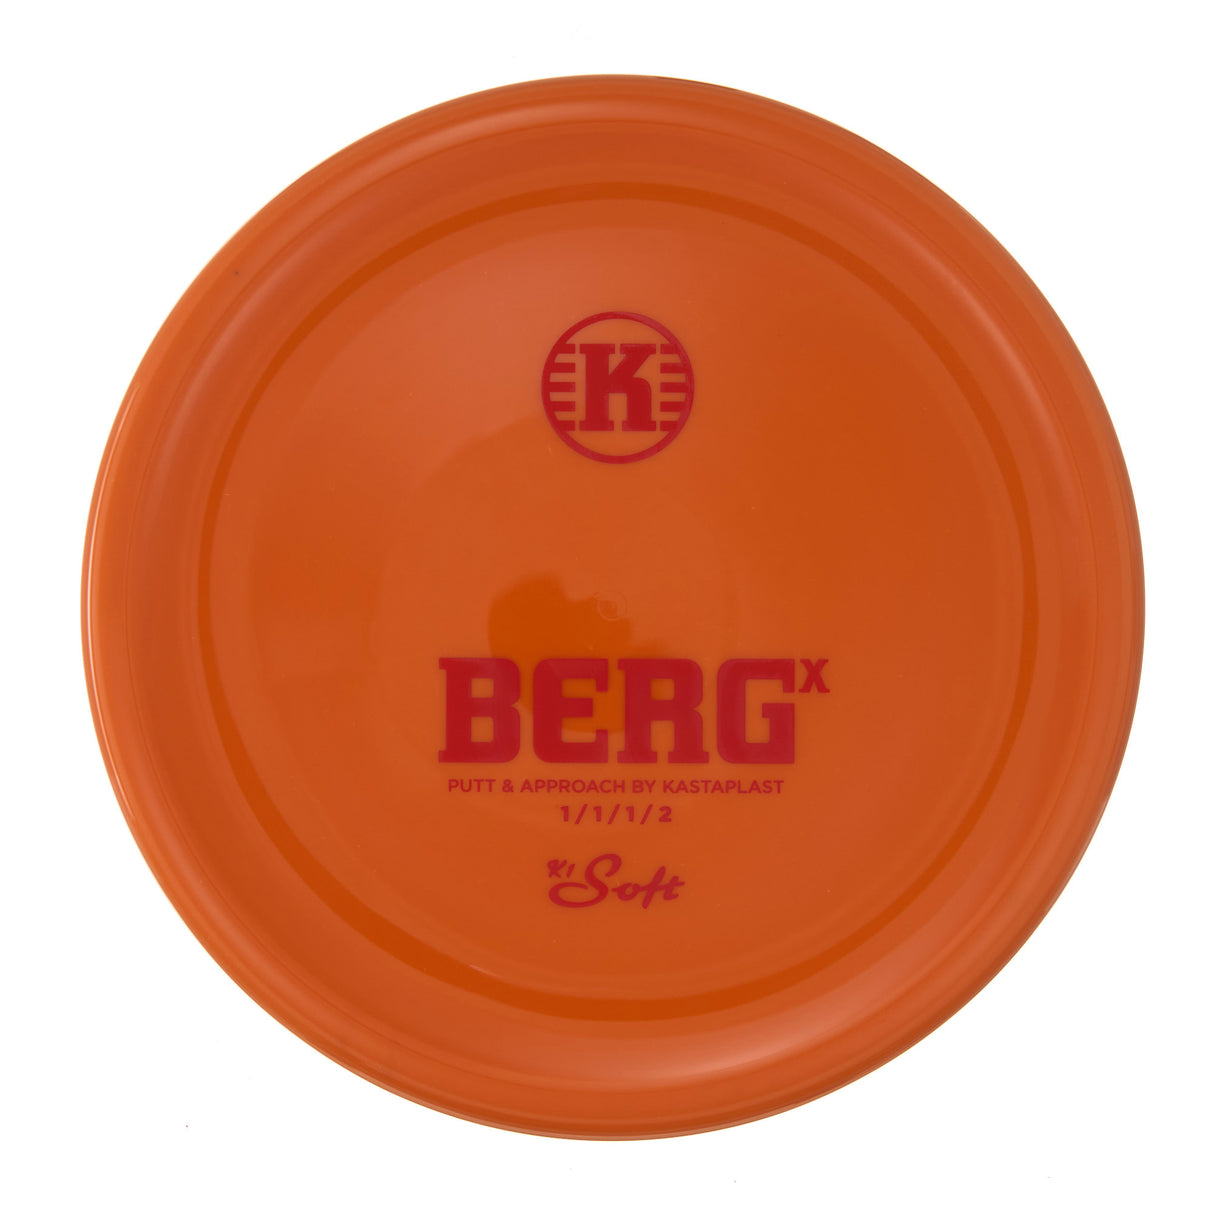 Kastaplast Berg X - K1 Soft 174g | Style 0003